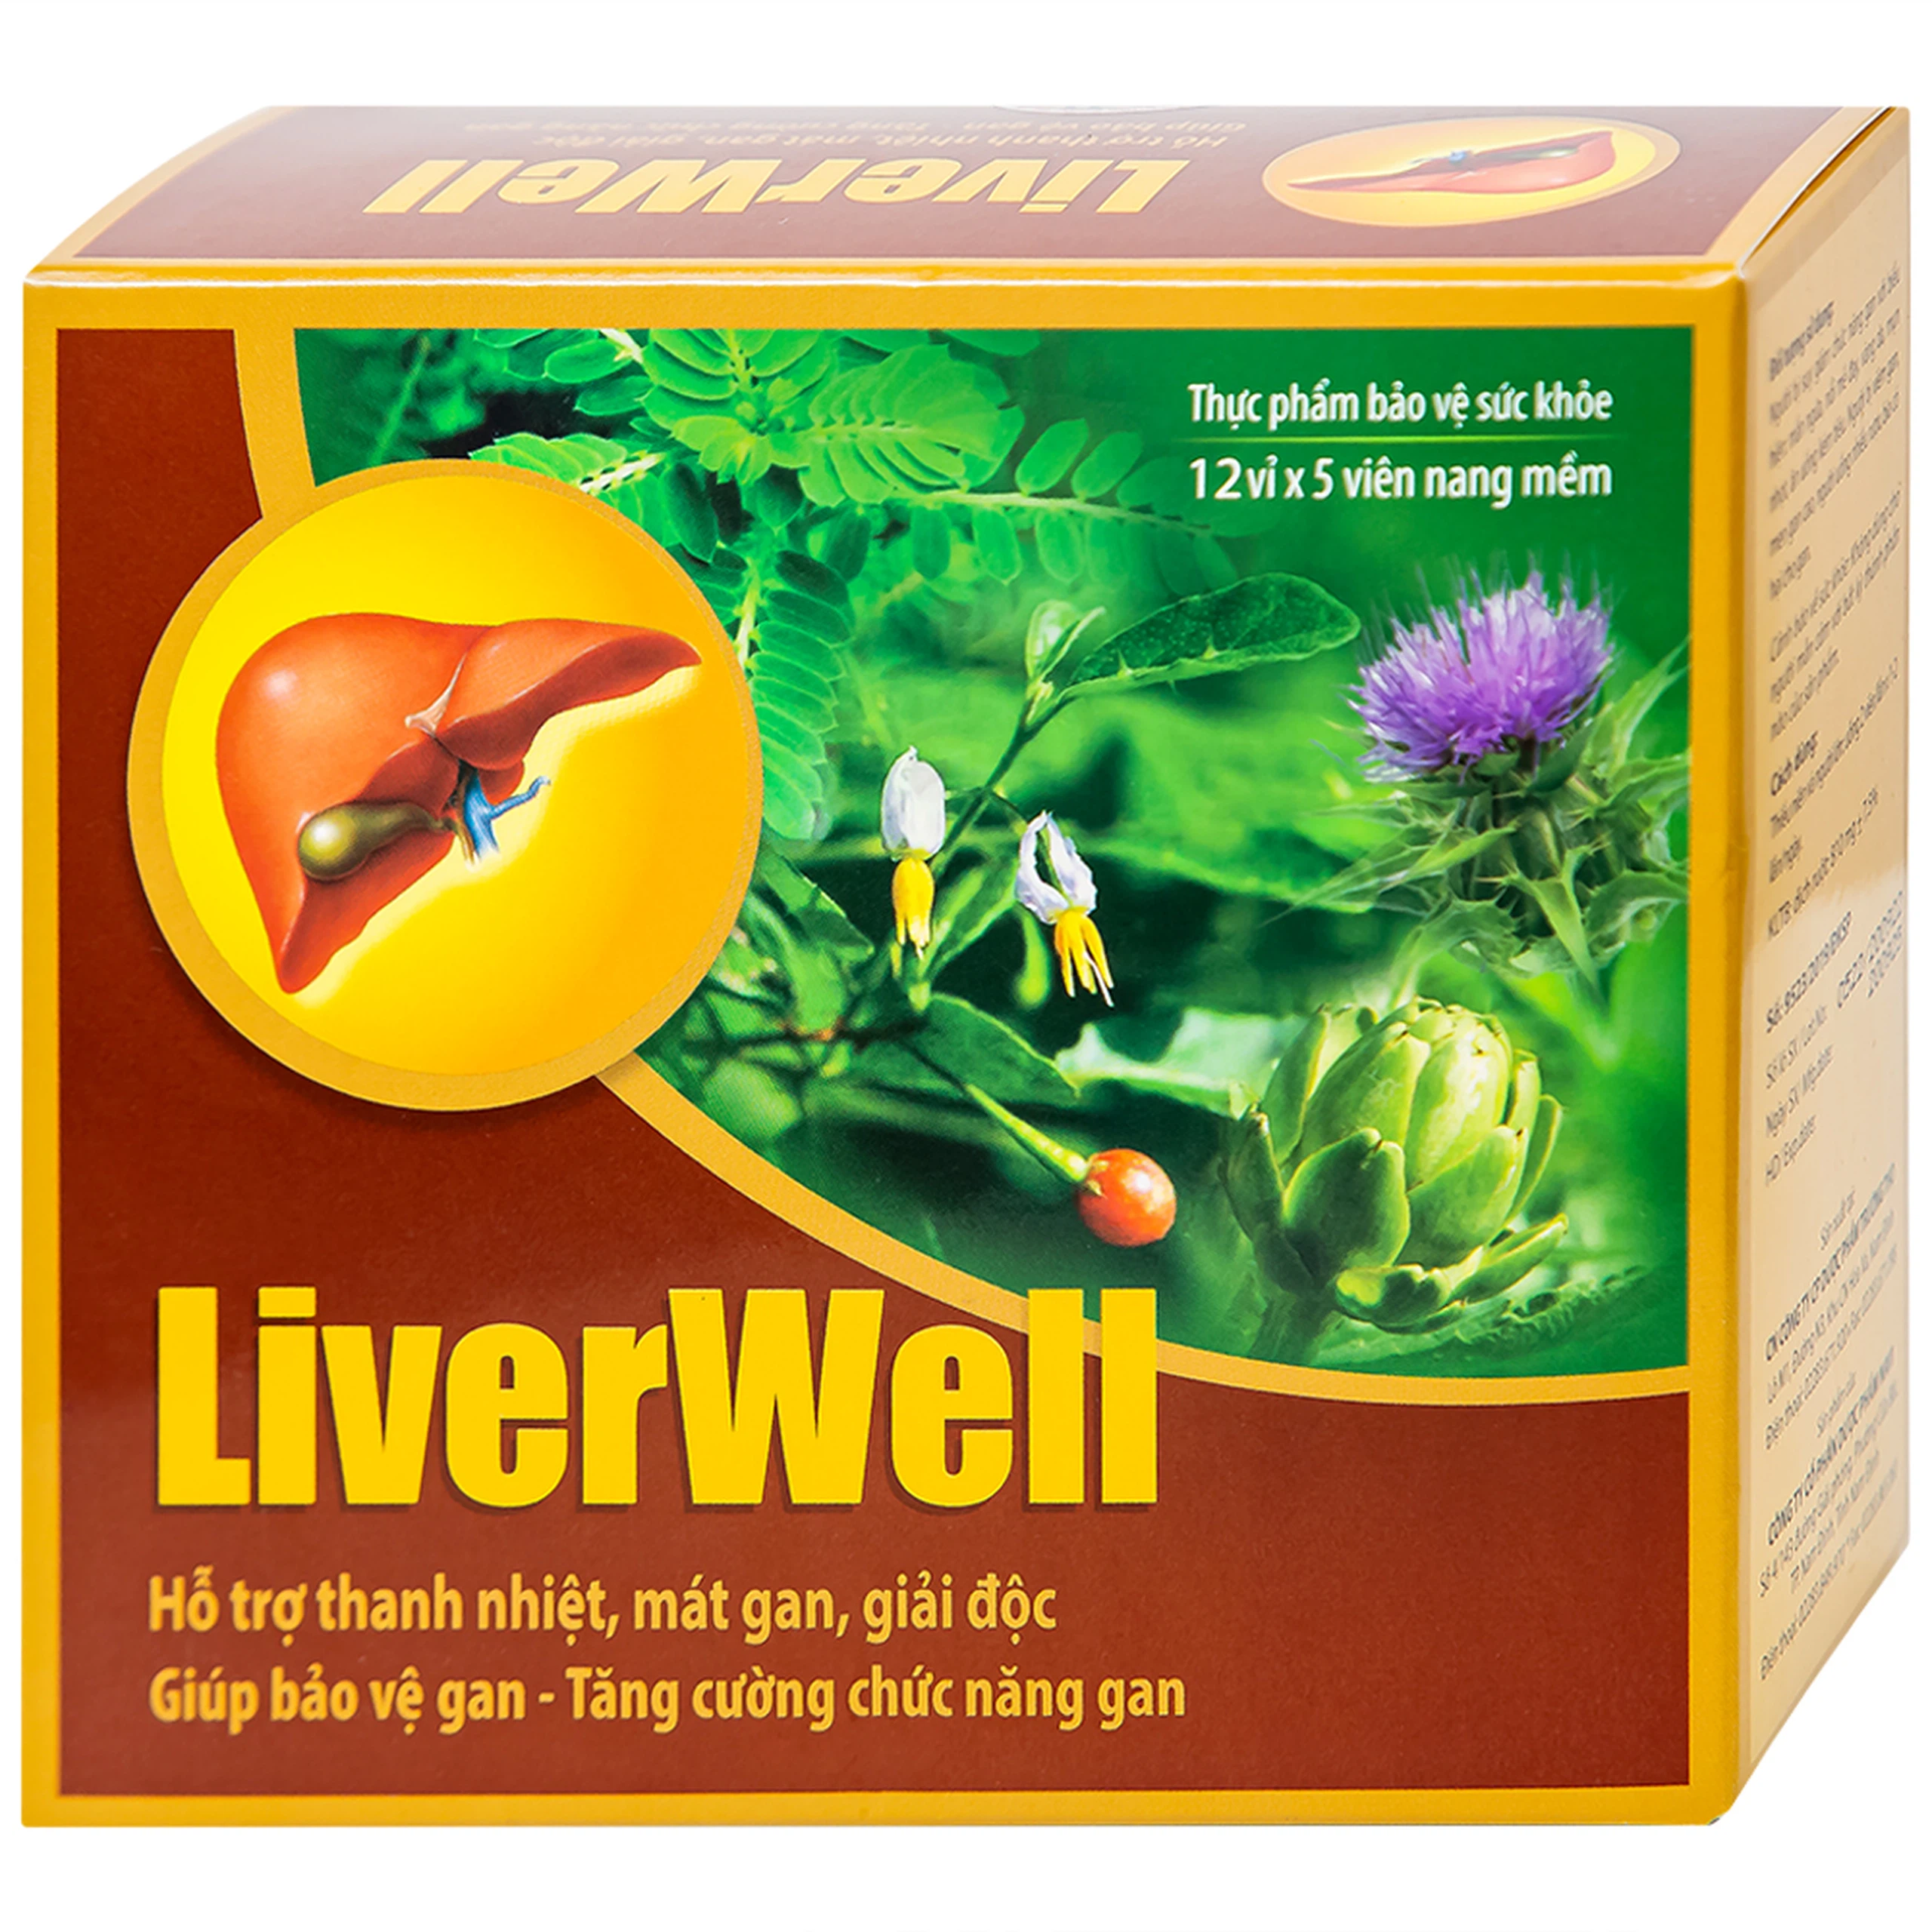 Viên uống LiverWell Navi hỗ trợ thanh nhiệt, mát gan, giải độc (12 vỉ x 5 viên)